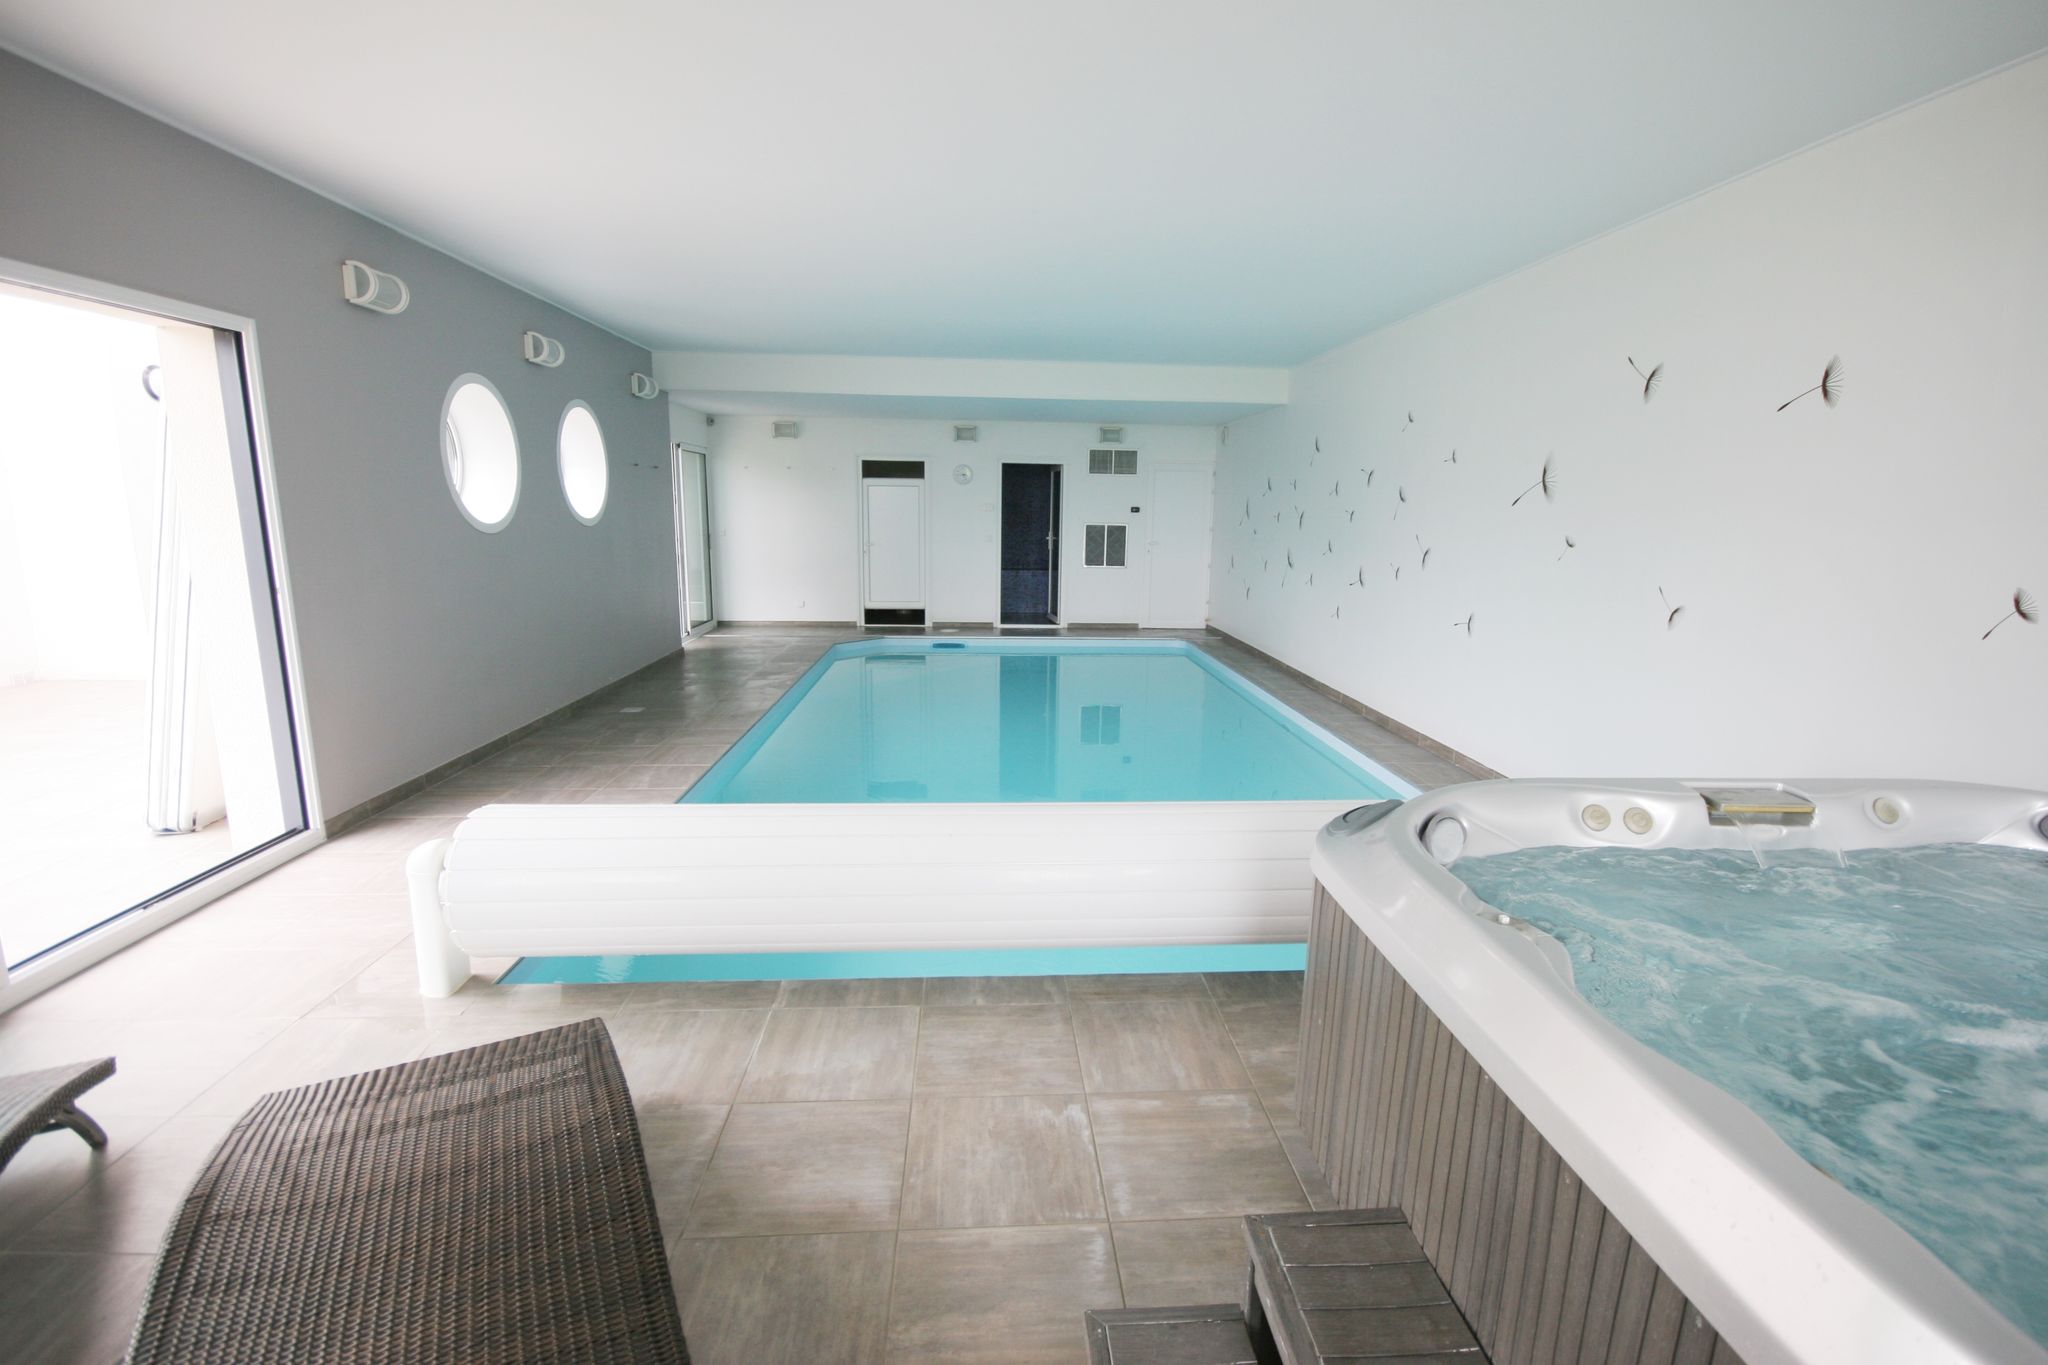 Mooie moderne villa met binnenzwembad, jacuzzi en een luxe kookeiland